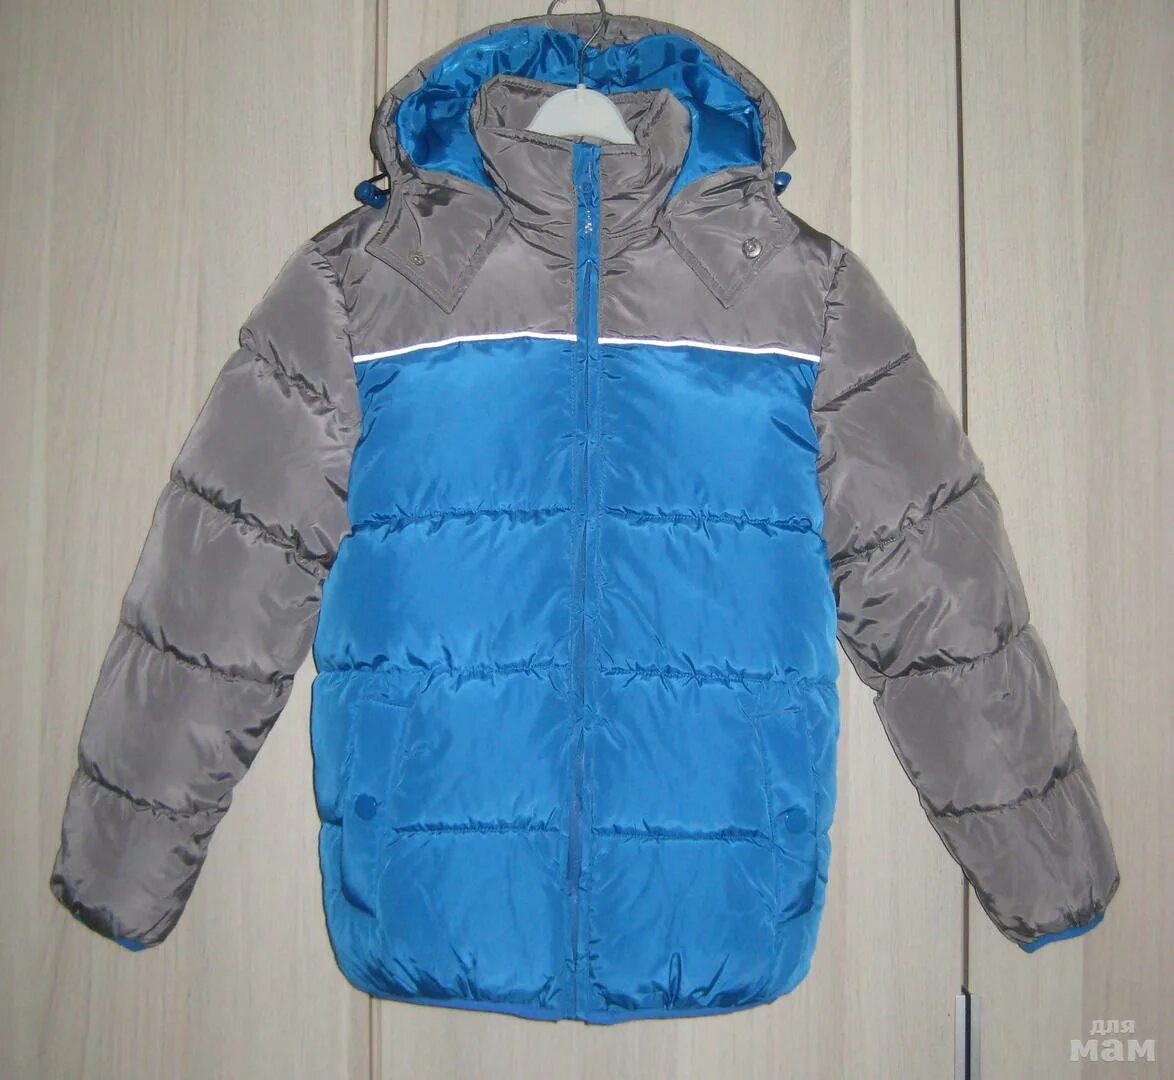 Куртка для мальчика 146. Tech teytodit куртка зимняя на мальчика 146 см. Куртка зимняя для мальчика 140. Куртка для мальчика зимняя 140 рост. Зимние куртки мальчики 146 рост.